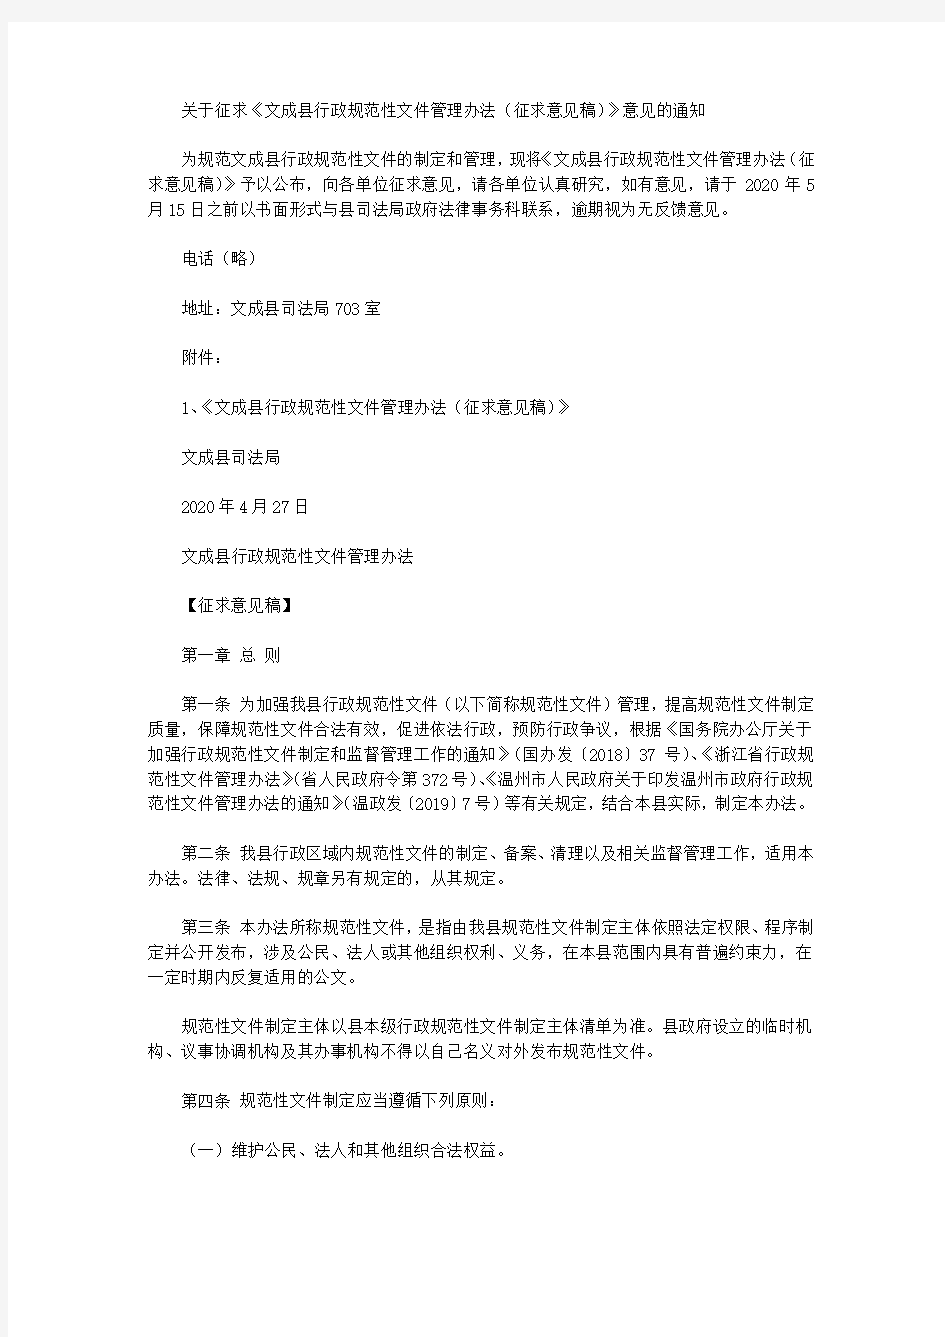 关于征求《文成县行政规范性文件管理办法(征求意见稿)》意见的通知